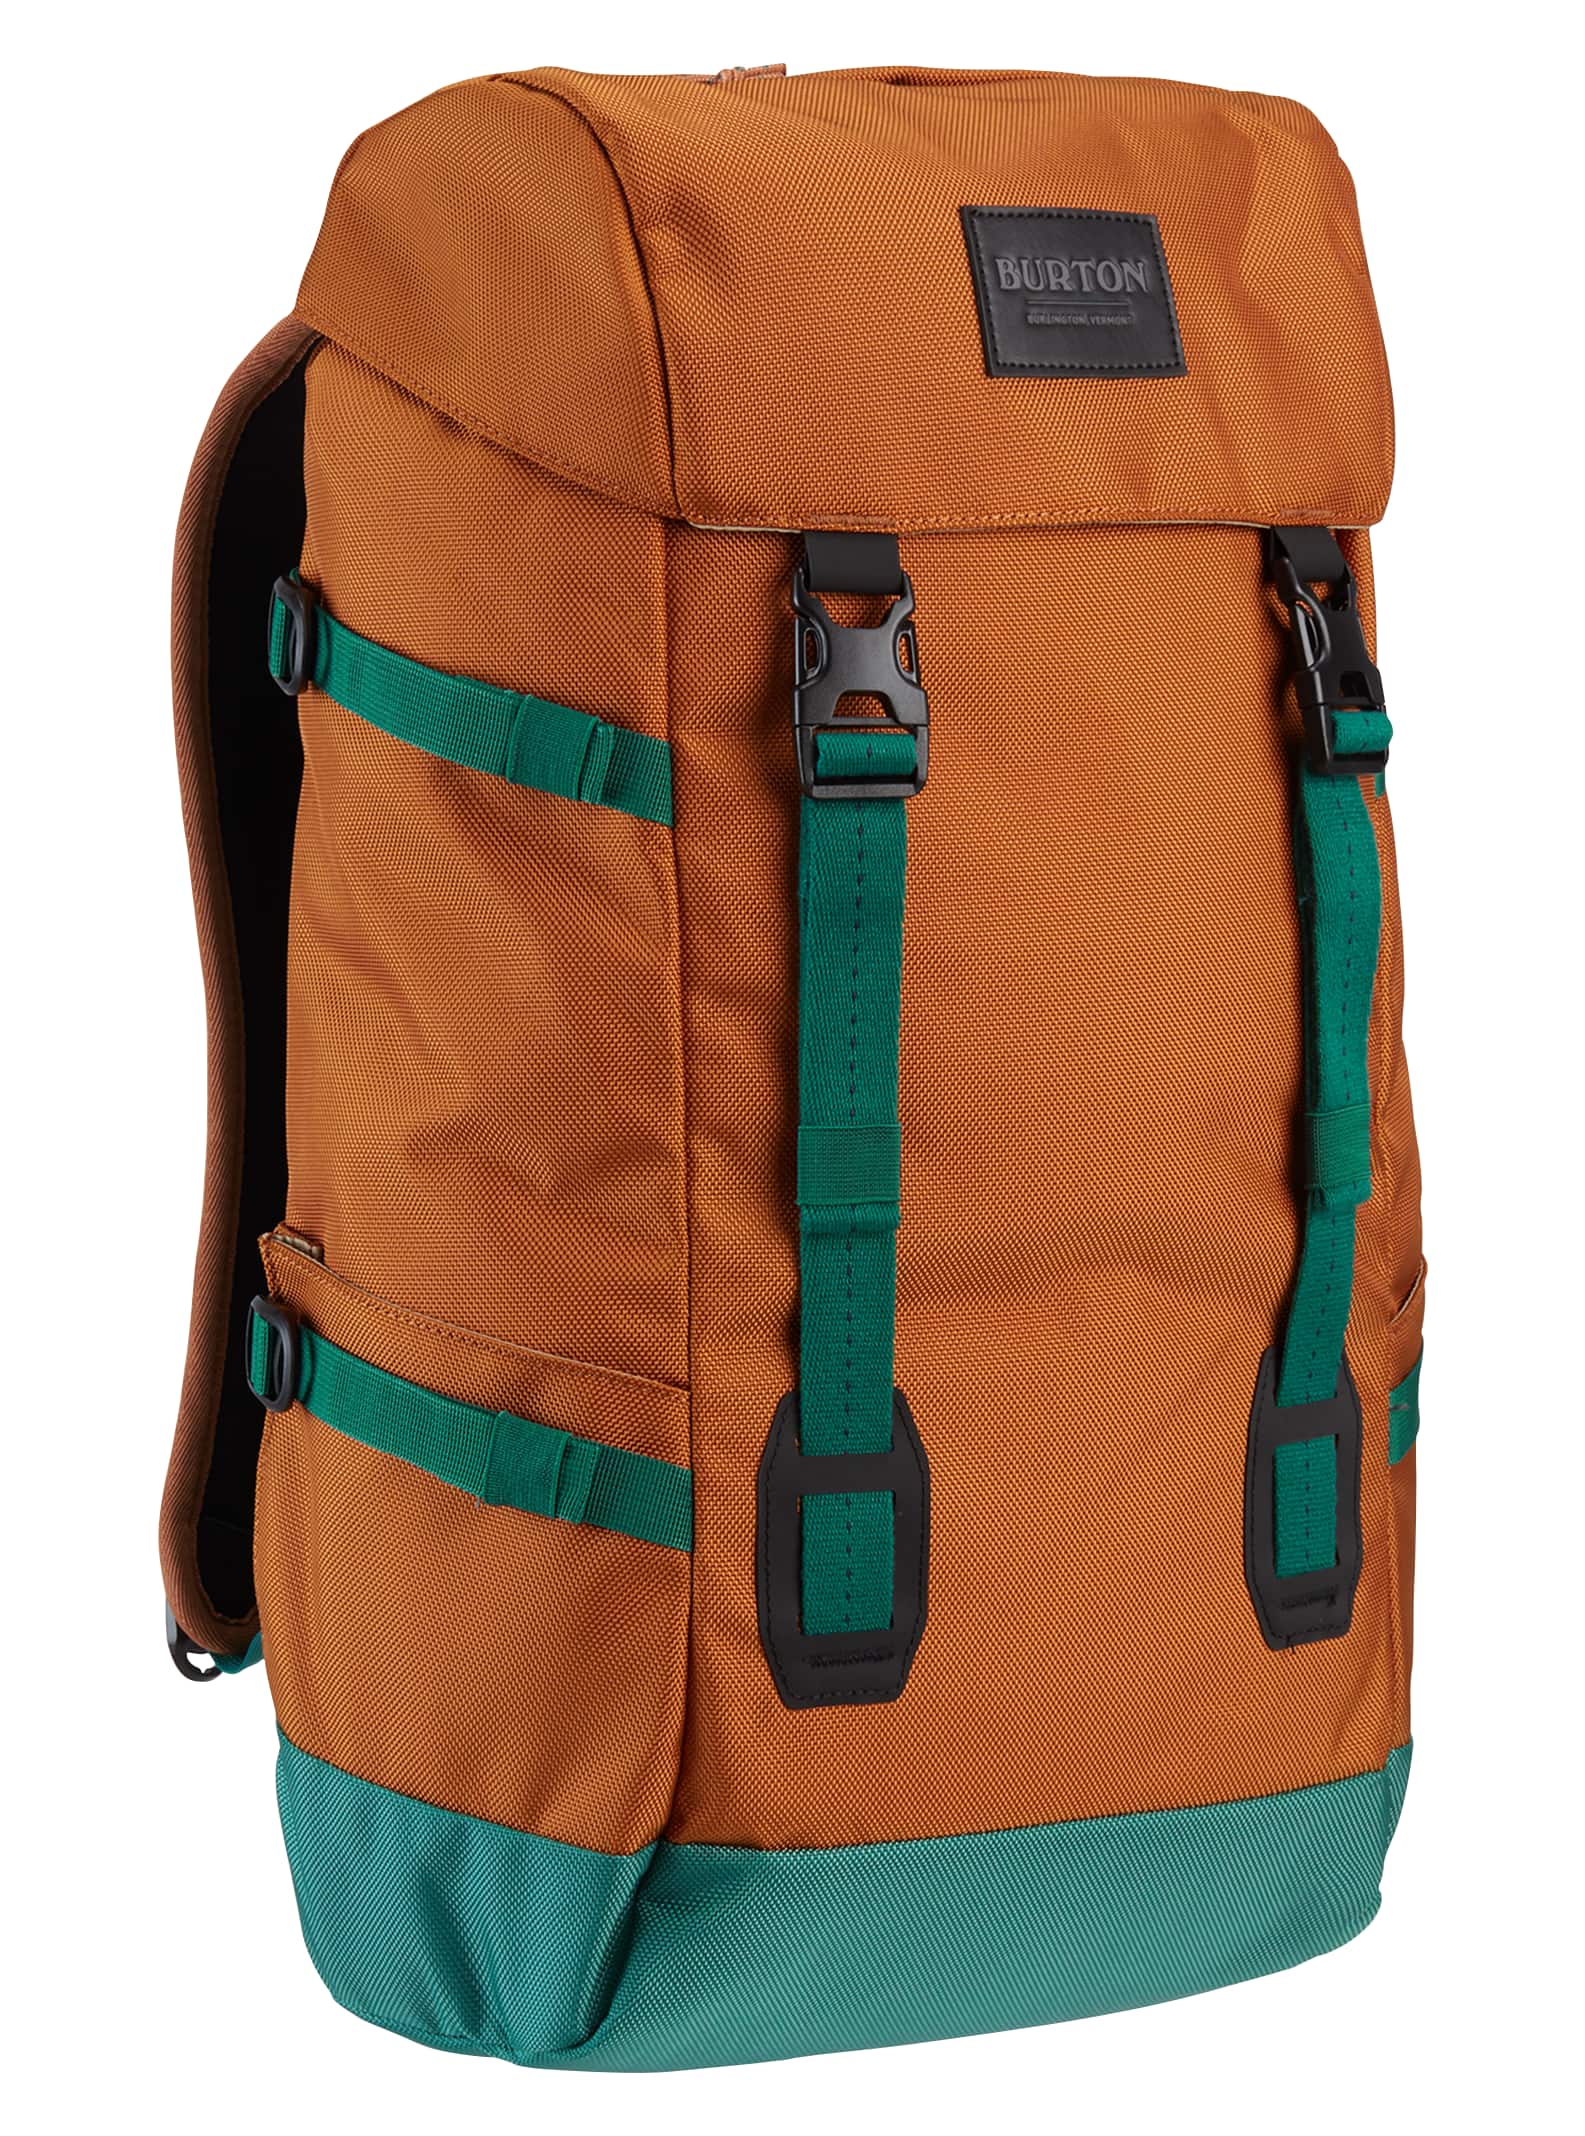 Burton tinder 2.0 30l backpack